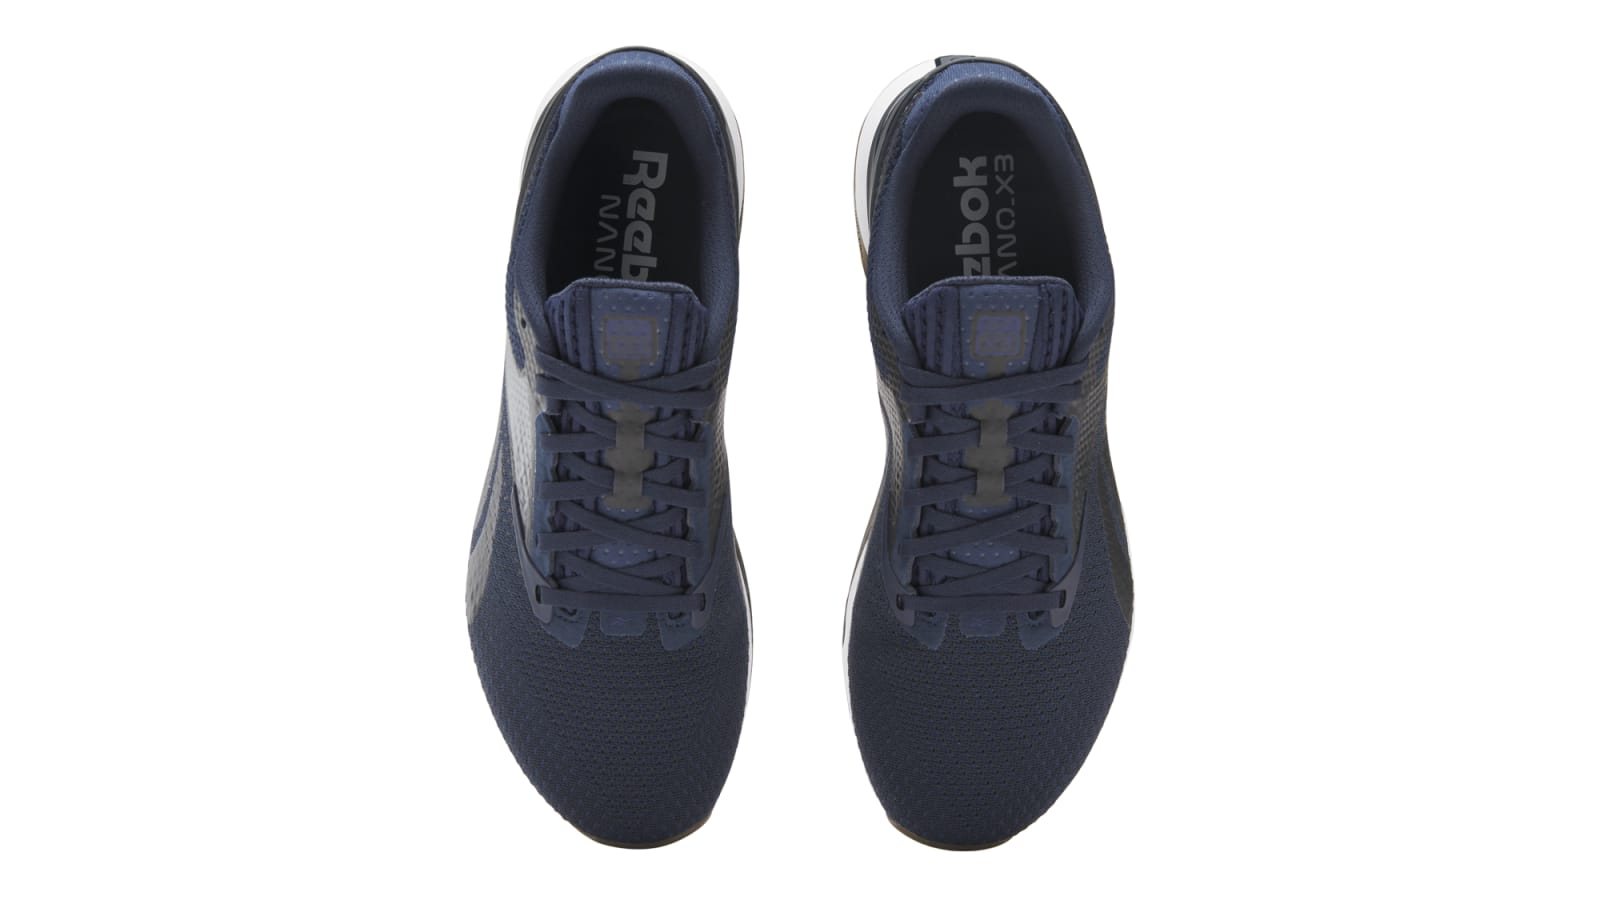  Reebok Unisex Nano X3 Sneaker, Electric Cobalt/Vector Navy, 4  US Men